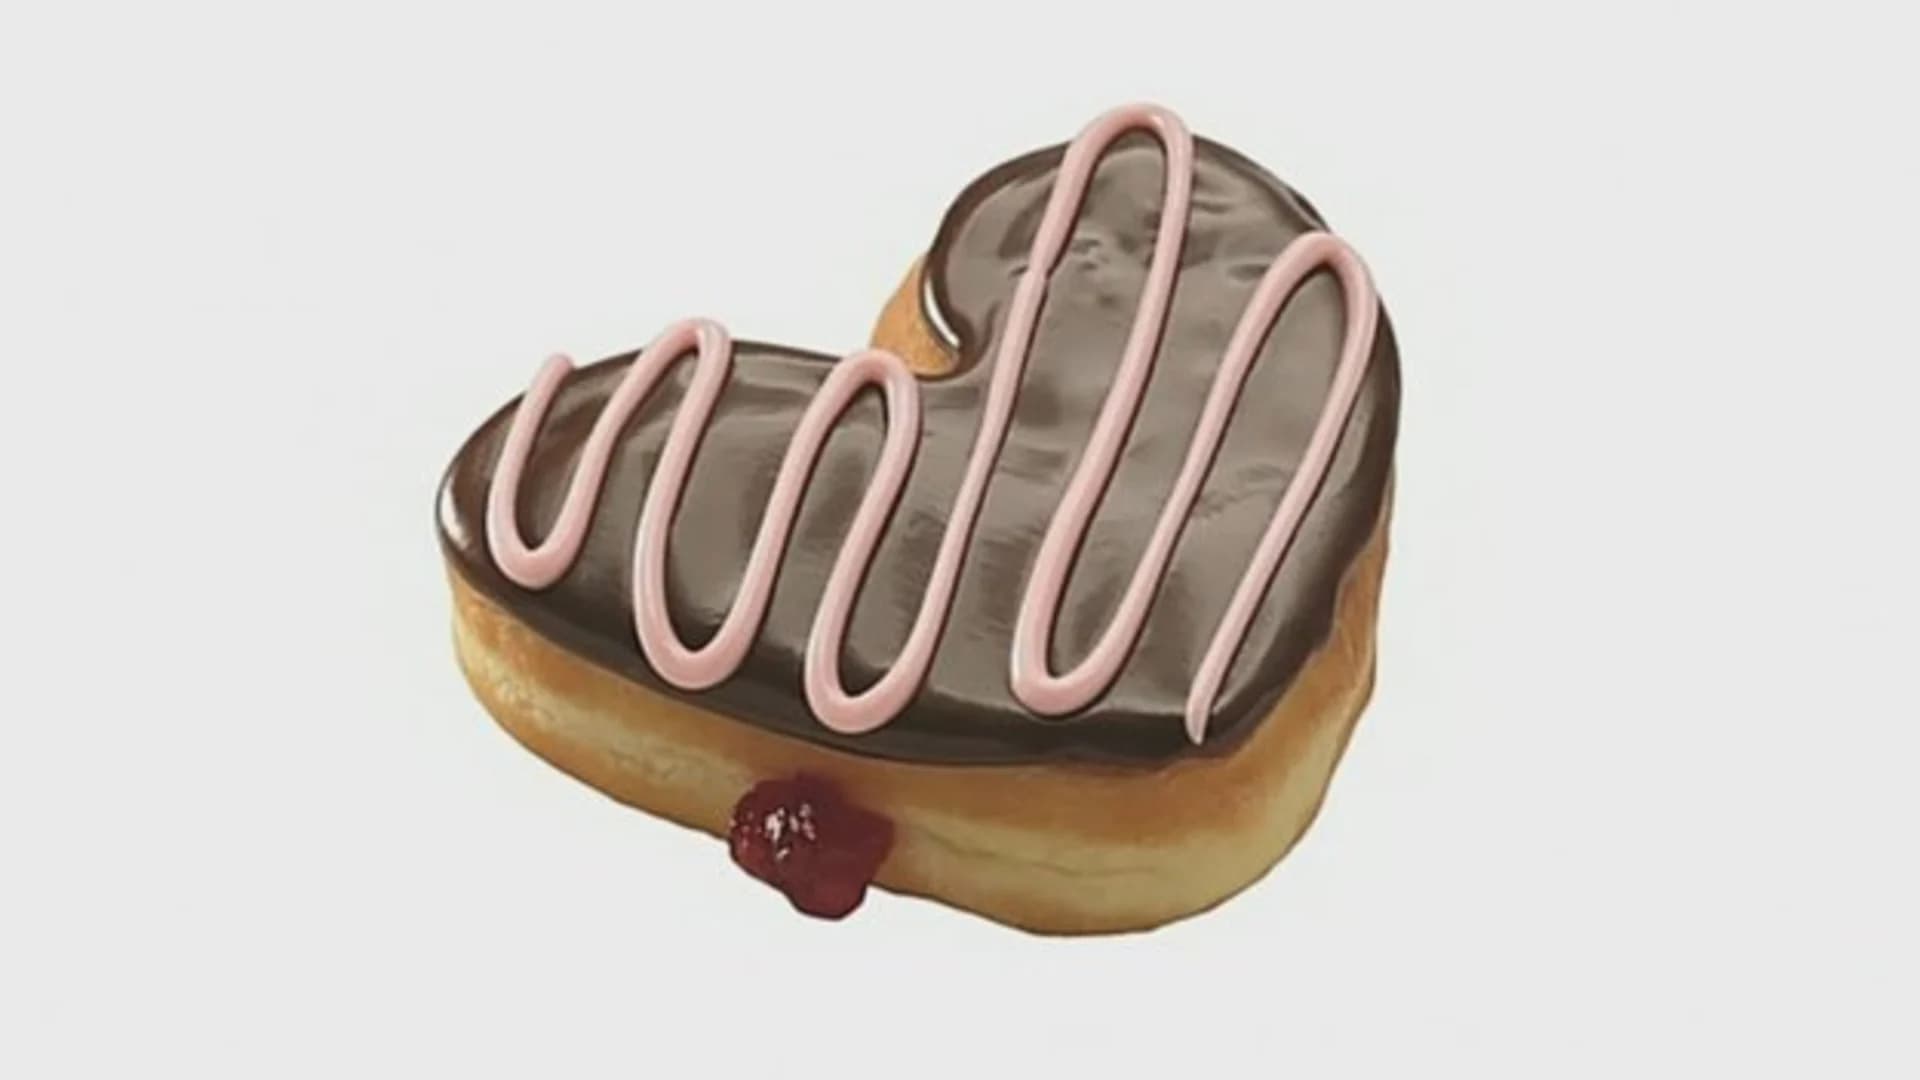 #N12BK: Dunkin’ Donuts rolls out royal wedding doughnut